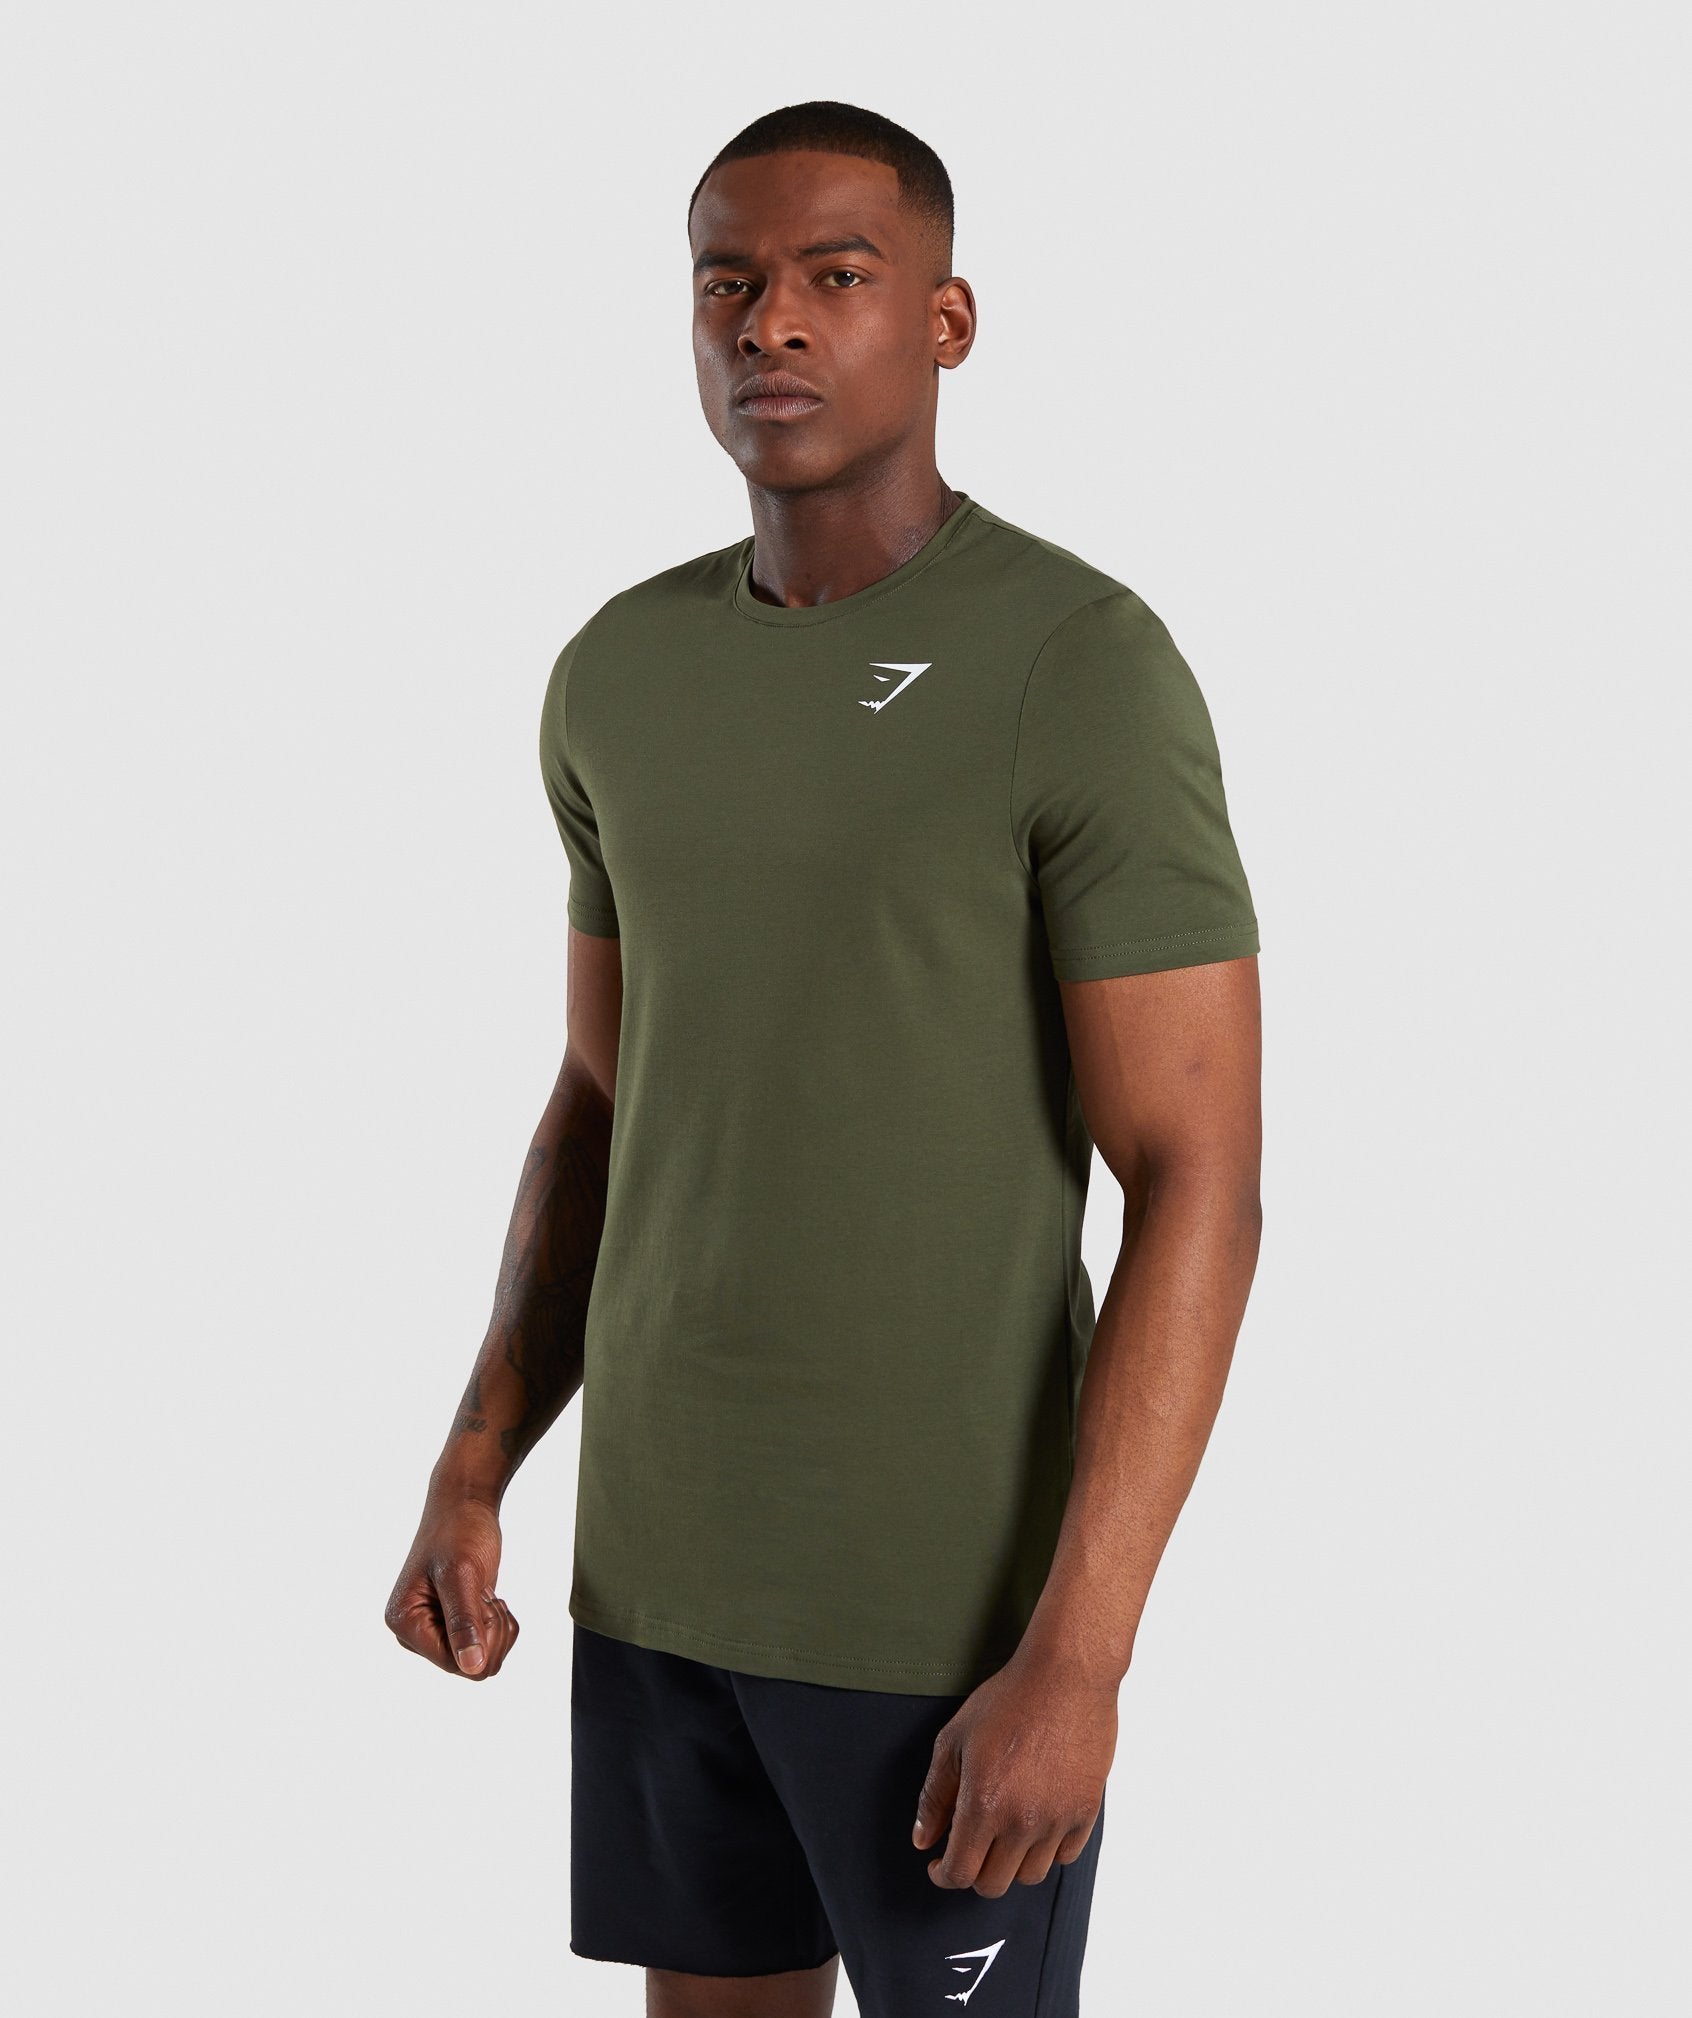 Gymshark Critical T-Shirt - Green - Large 